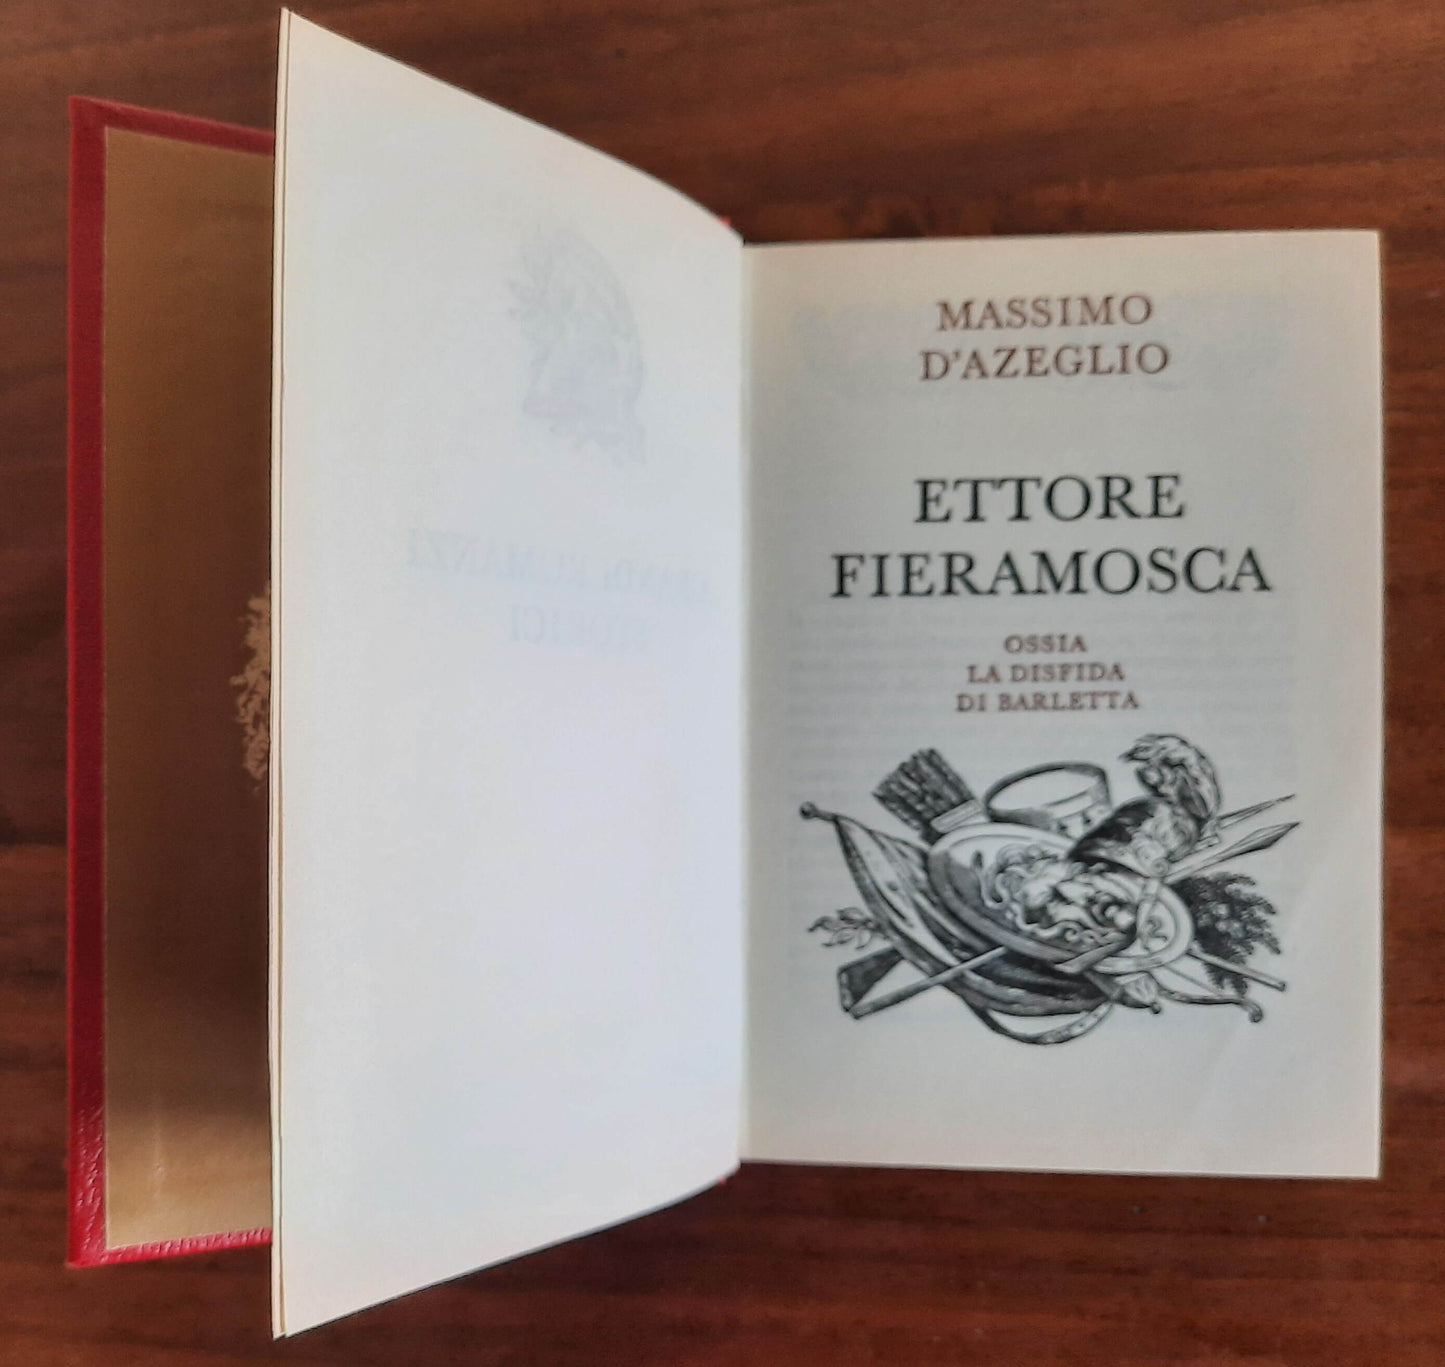 Ettore Fieramosca ossia la sfida di Barletta